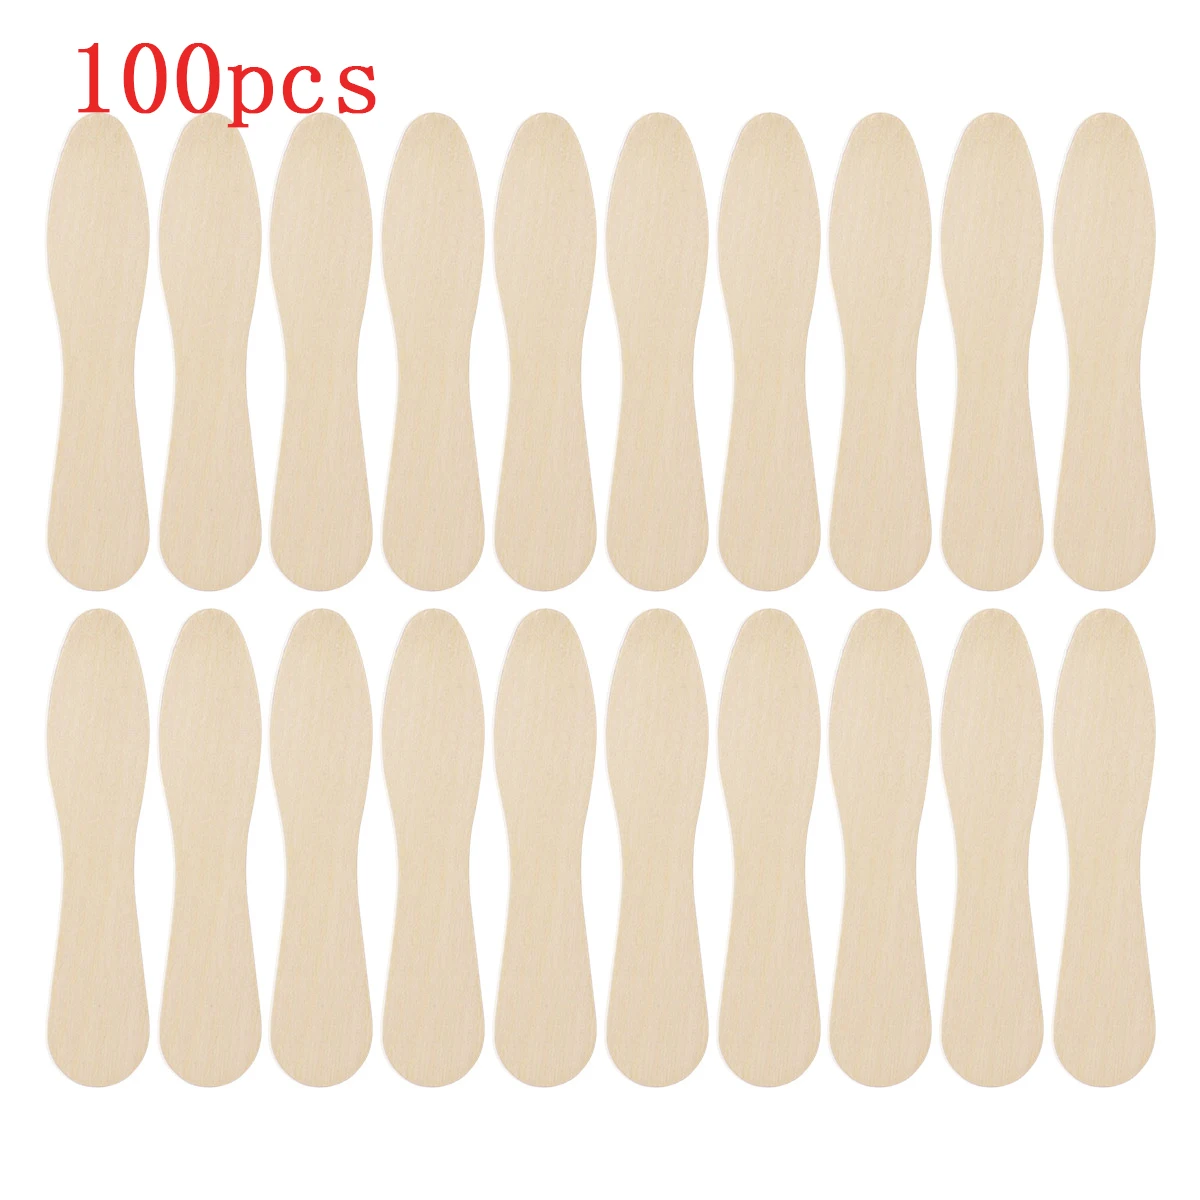 BESTONZON 100 шт. деревянная ложка для мороженого деревянные ложки сбора одноразовая